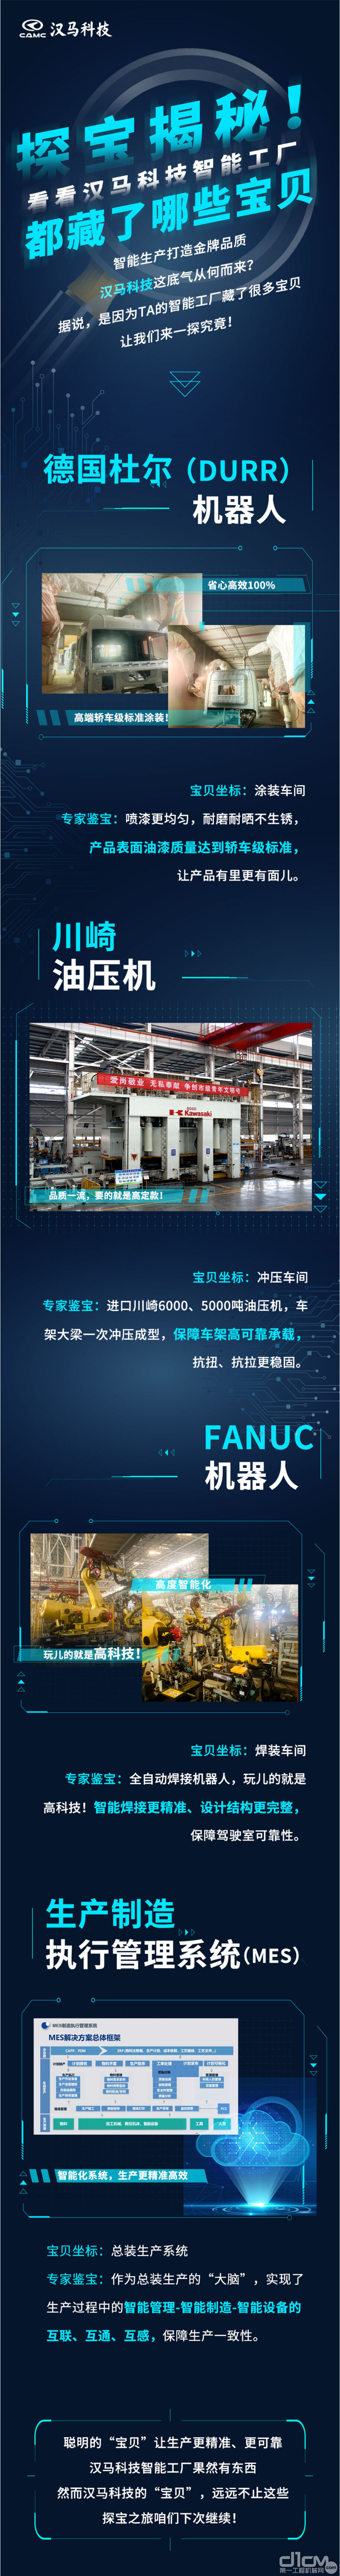 汉马科技智能工厂